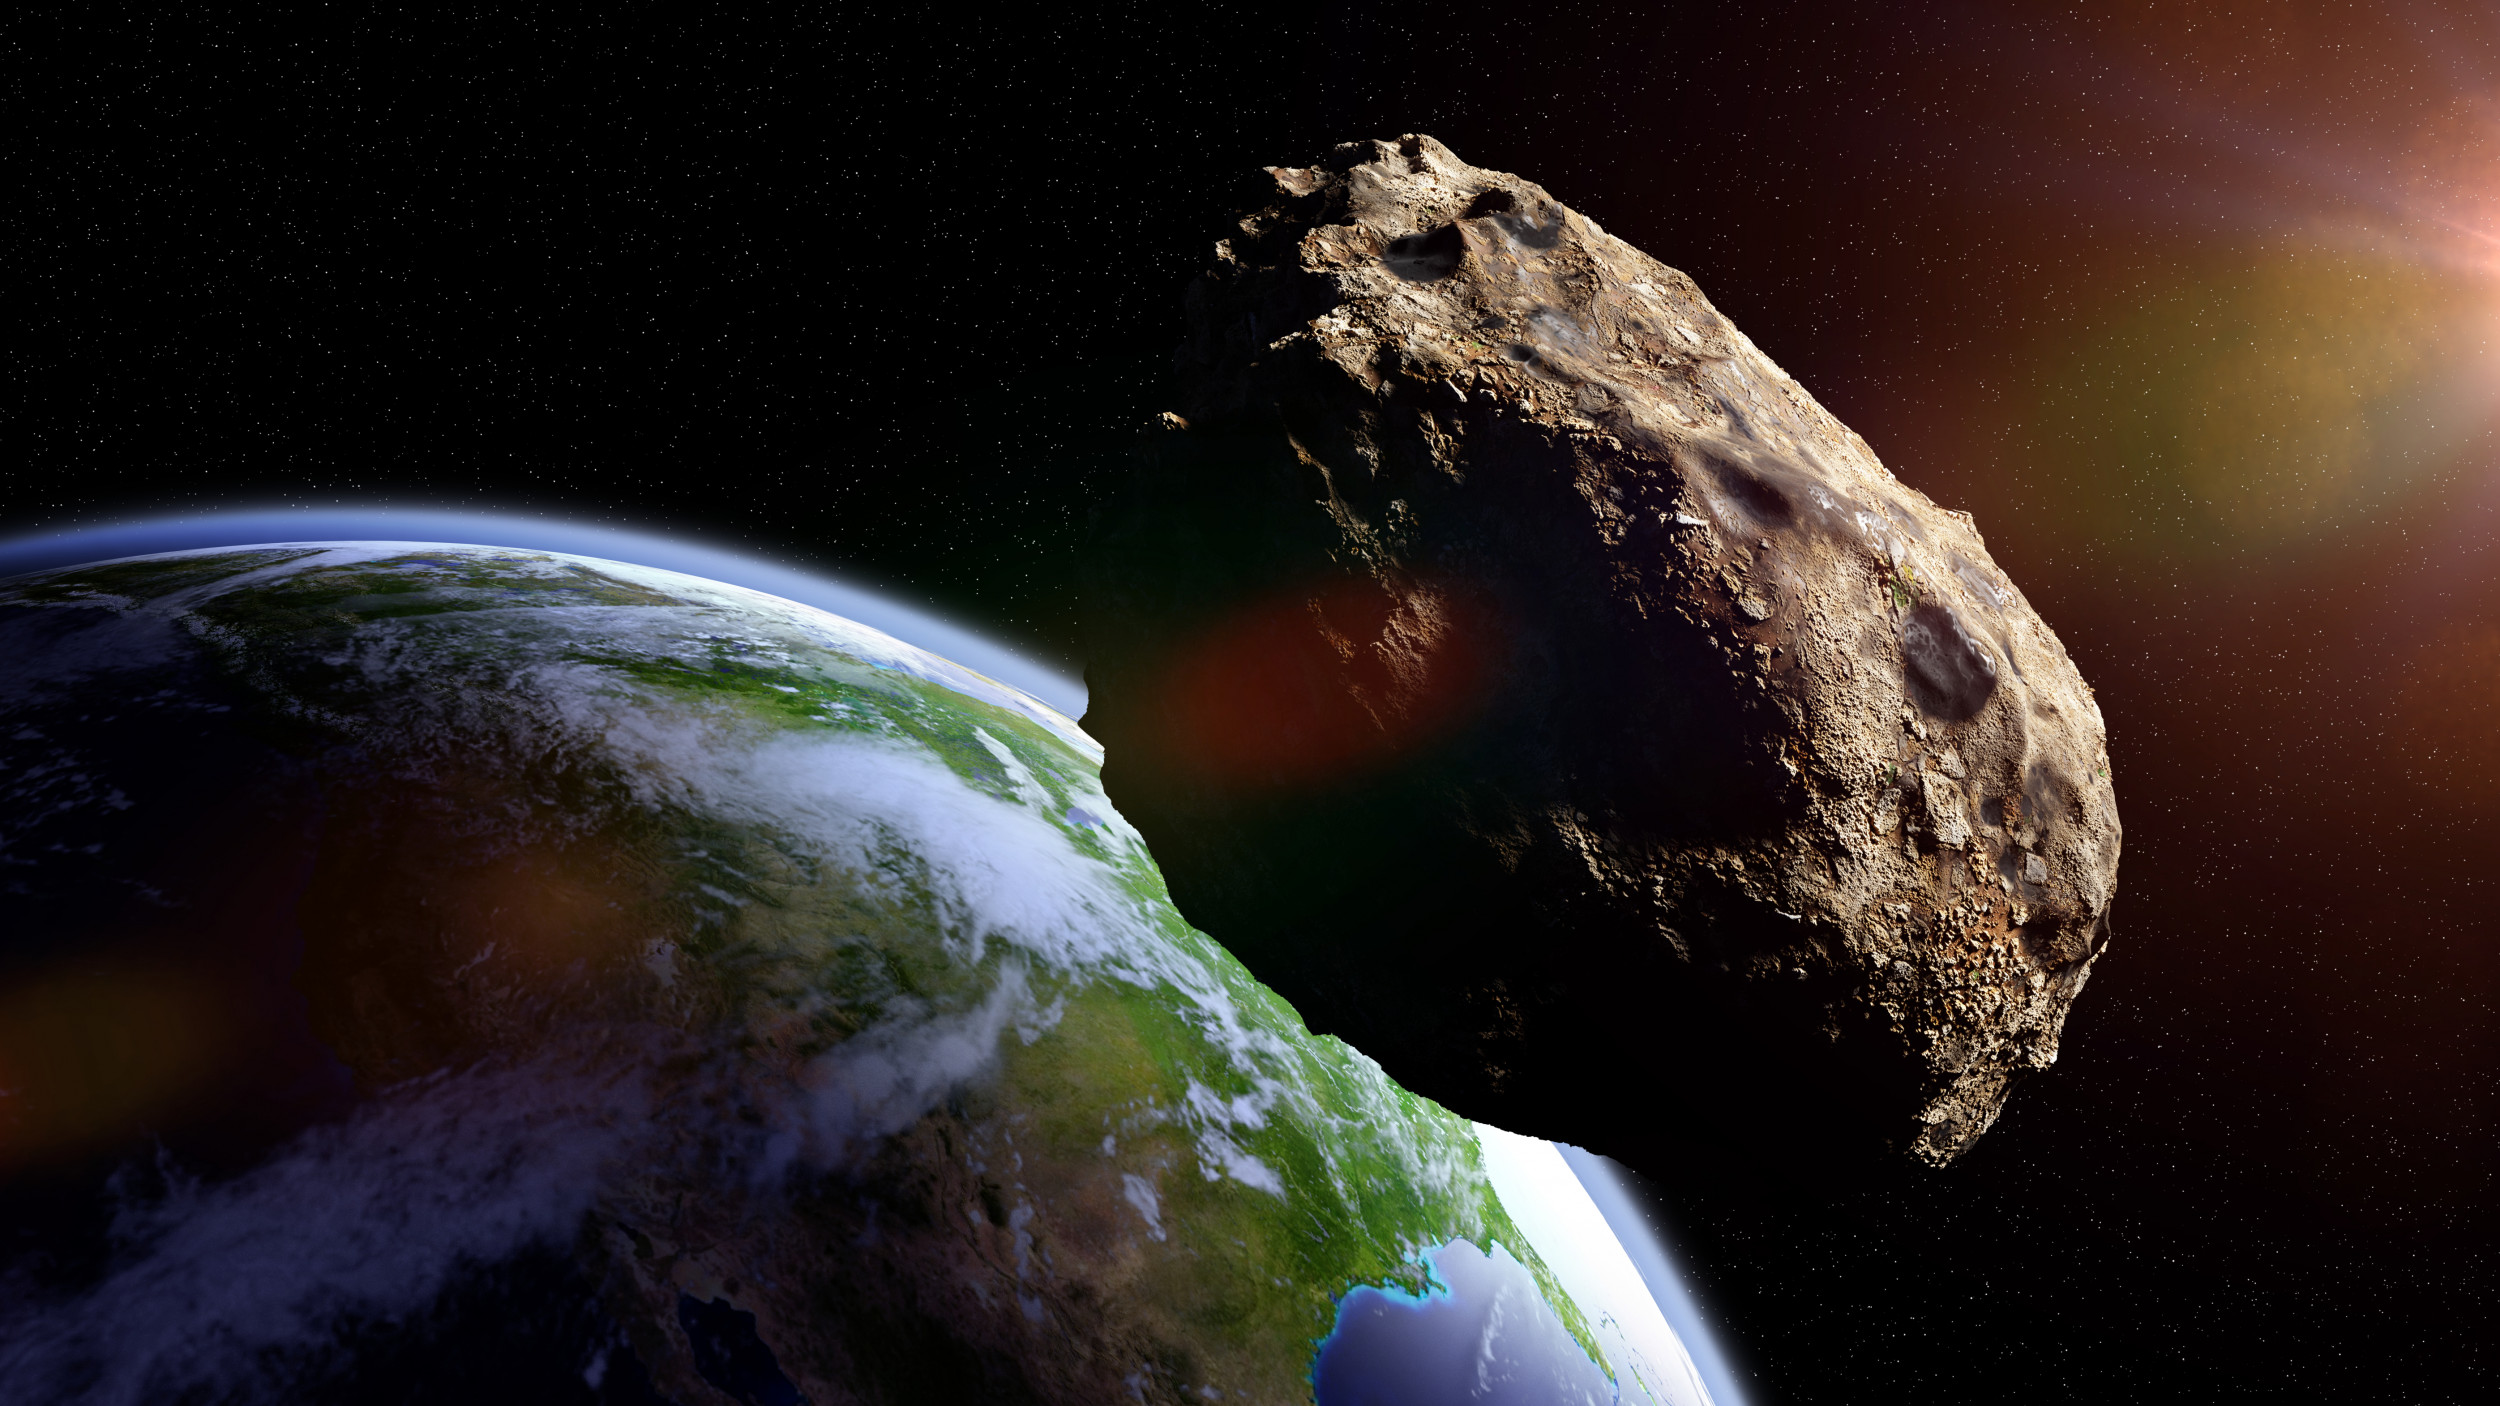 asteroid 2022 da14 path